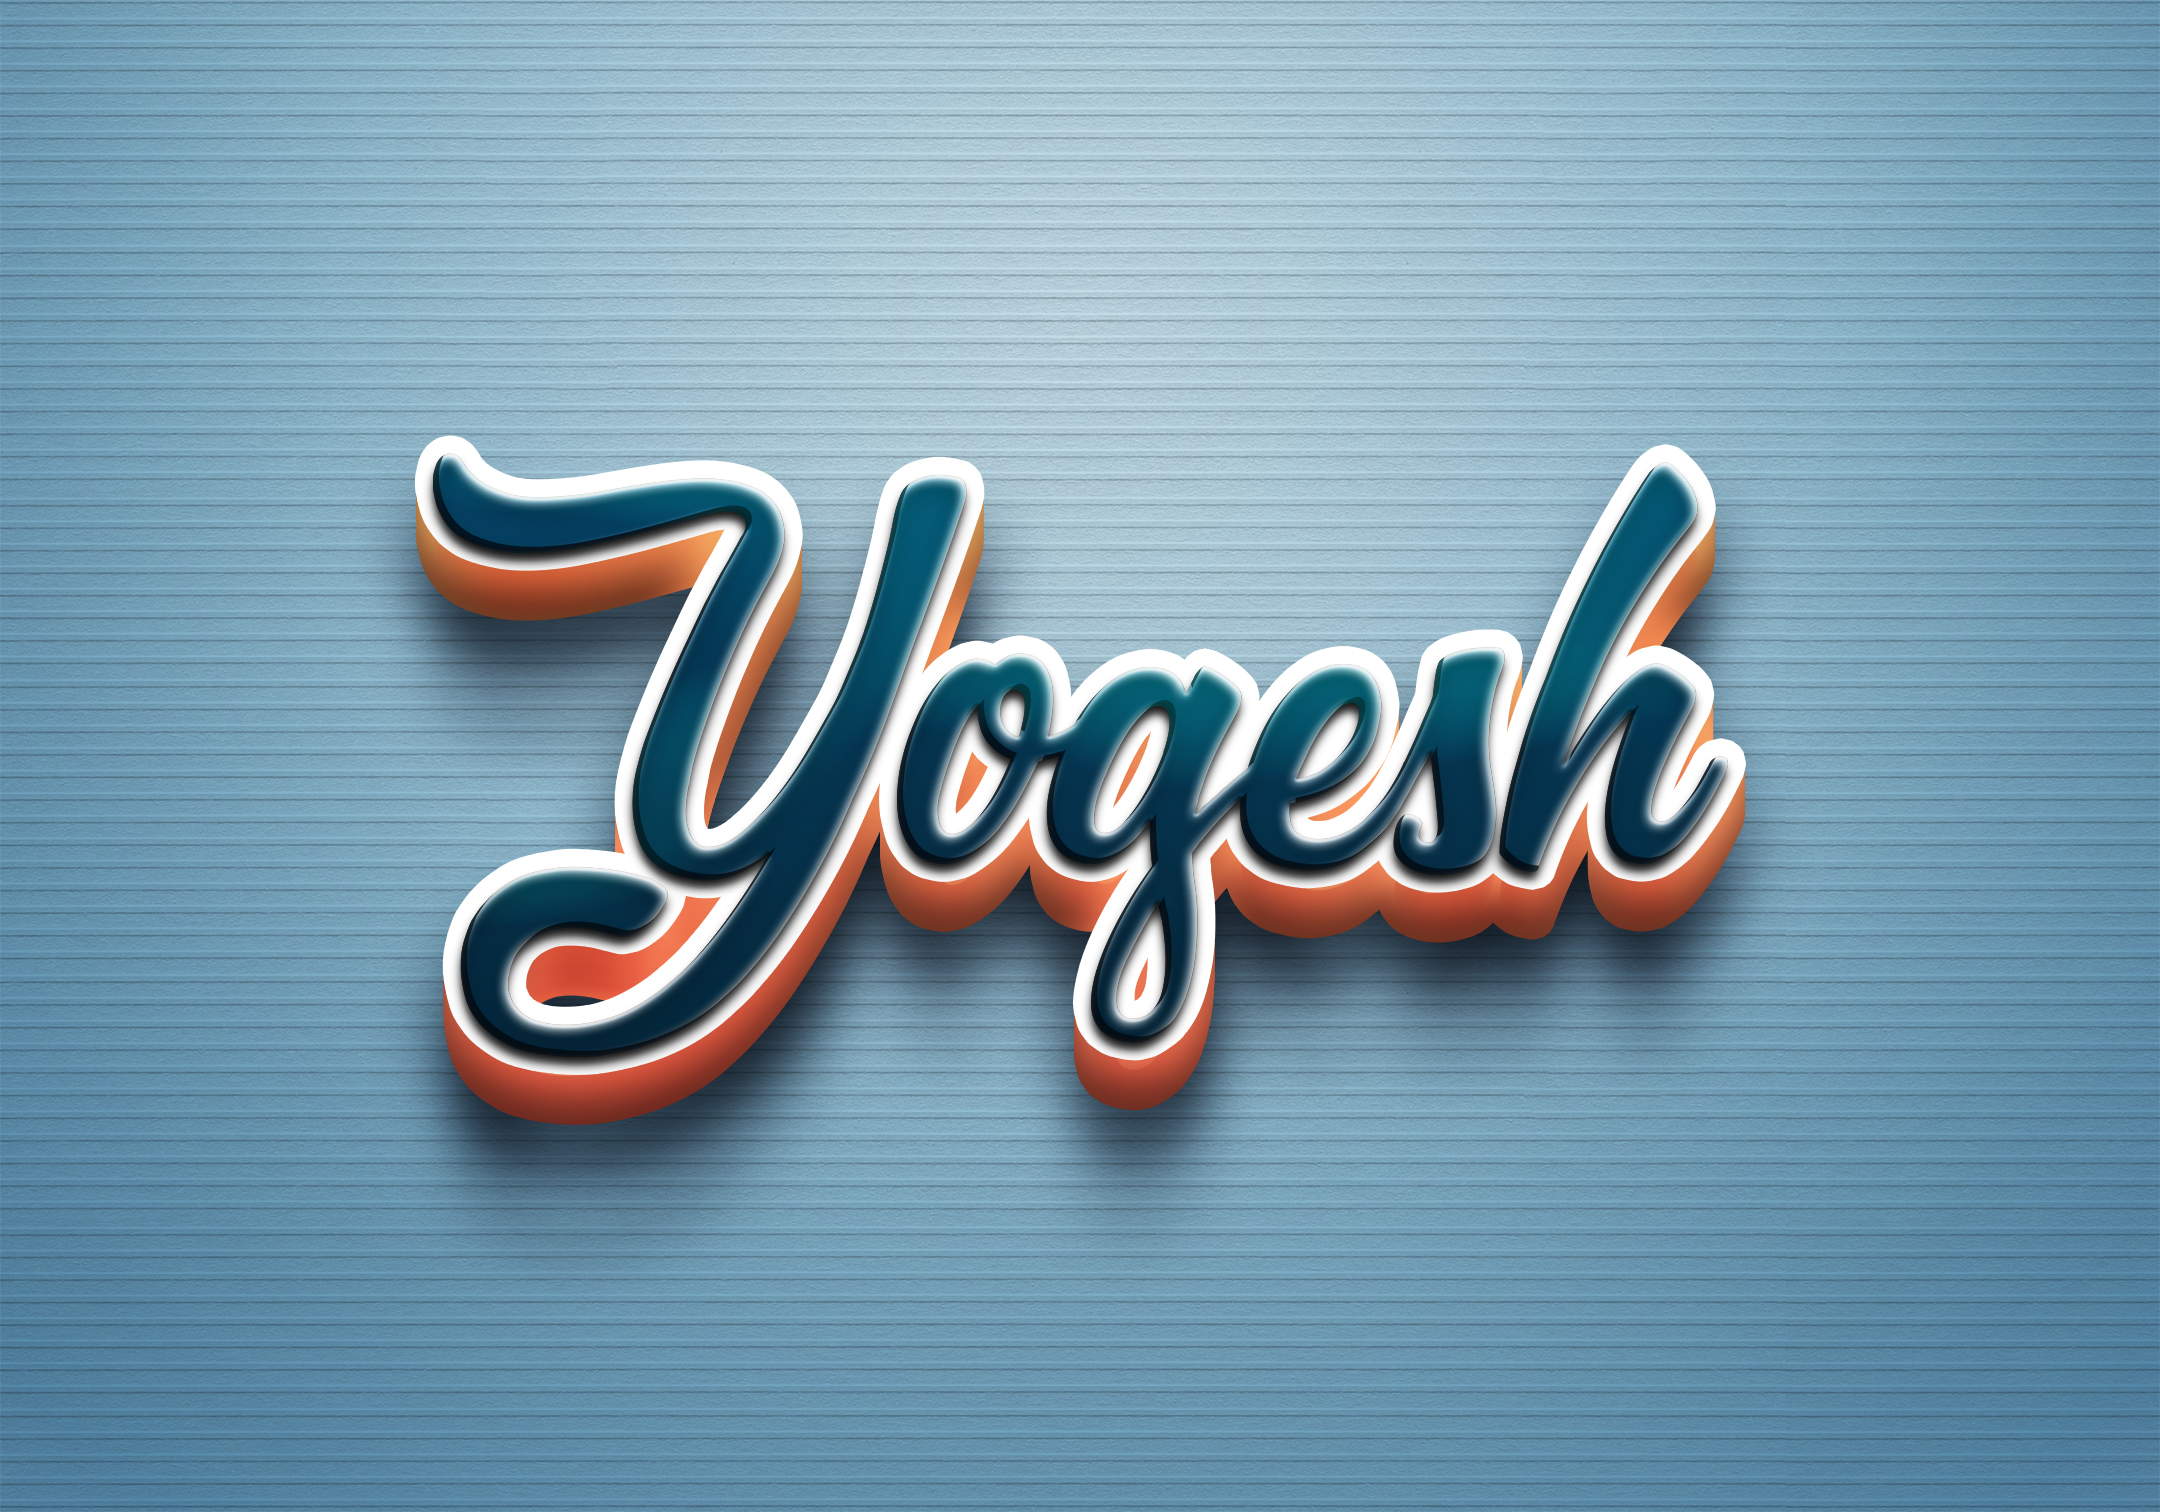 yogesh vaghela :: Behance